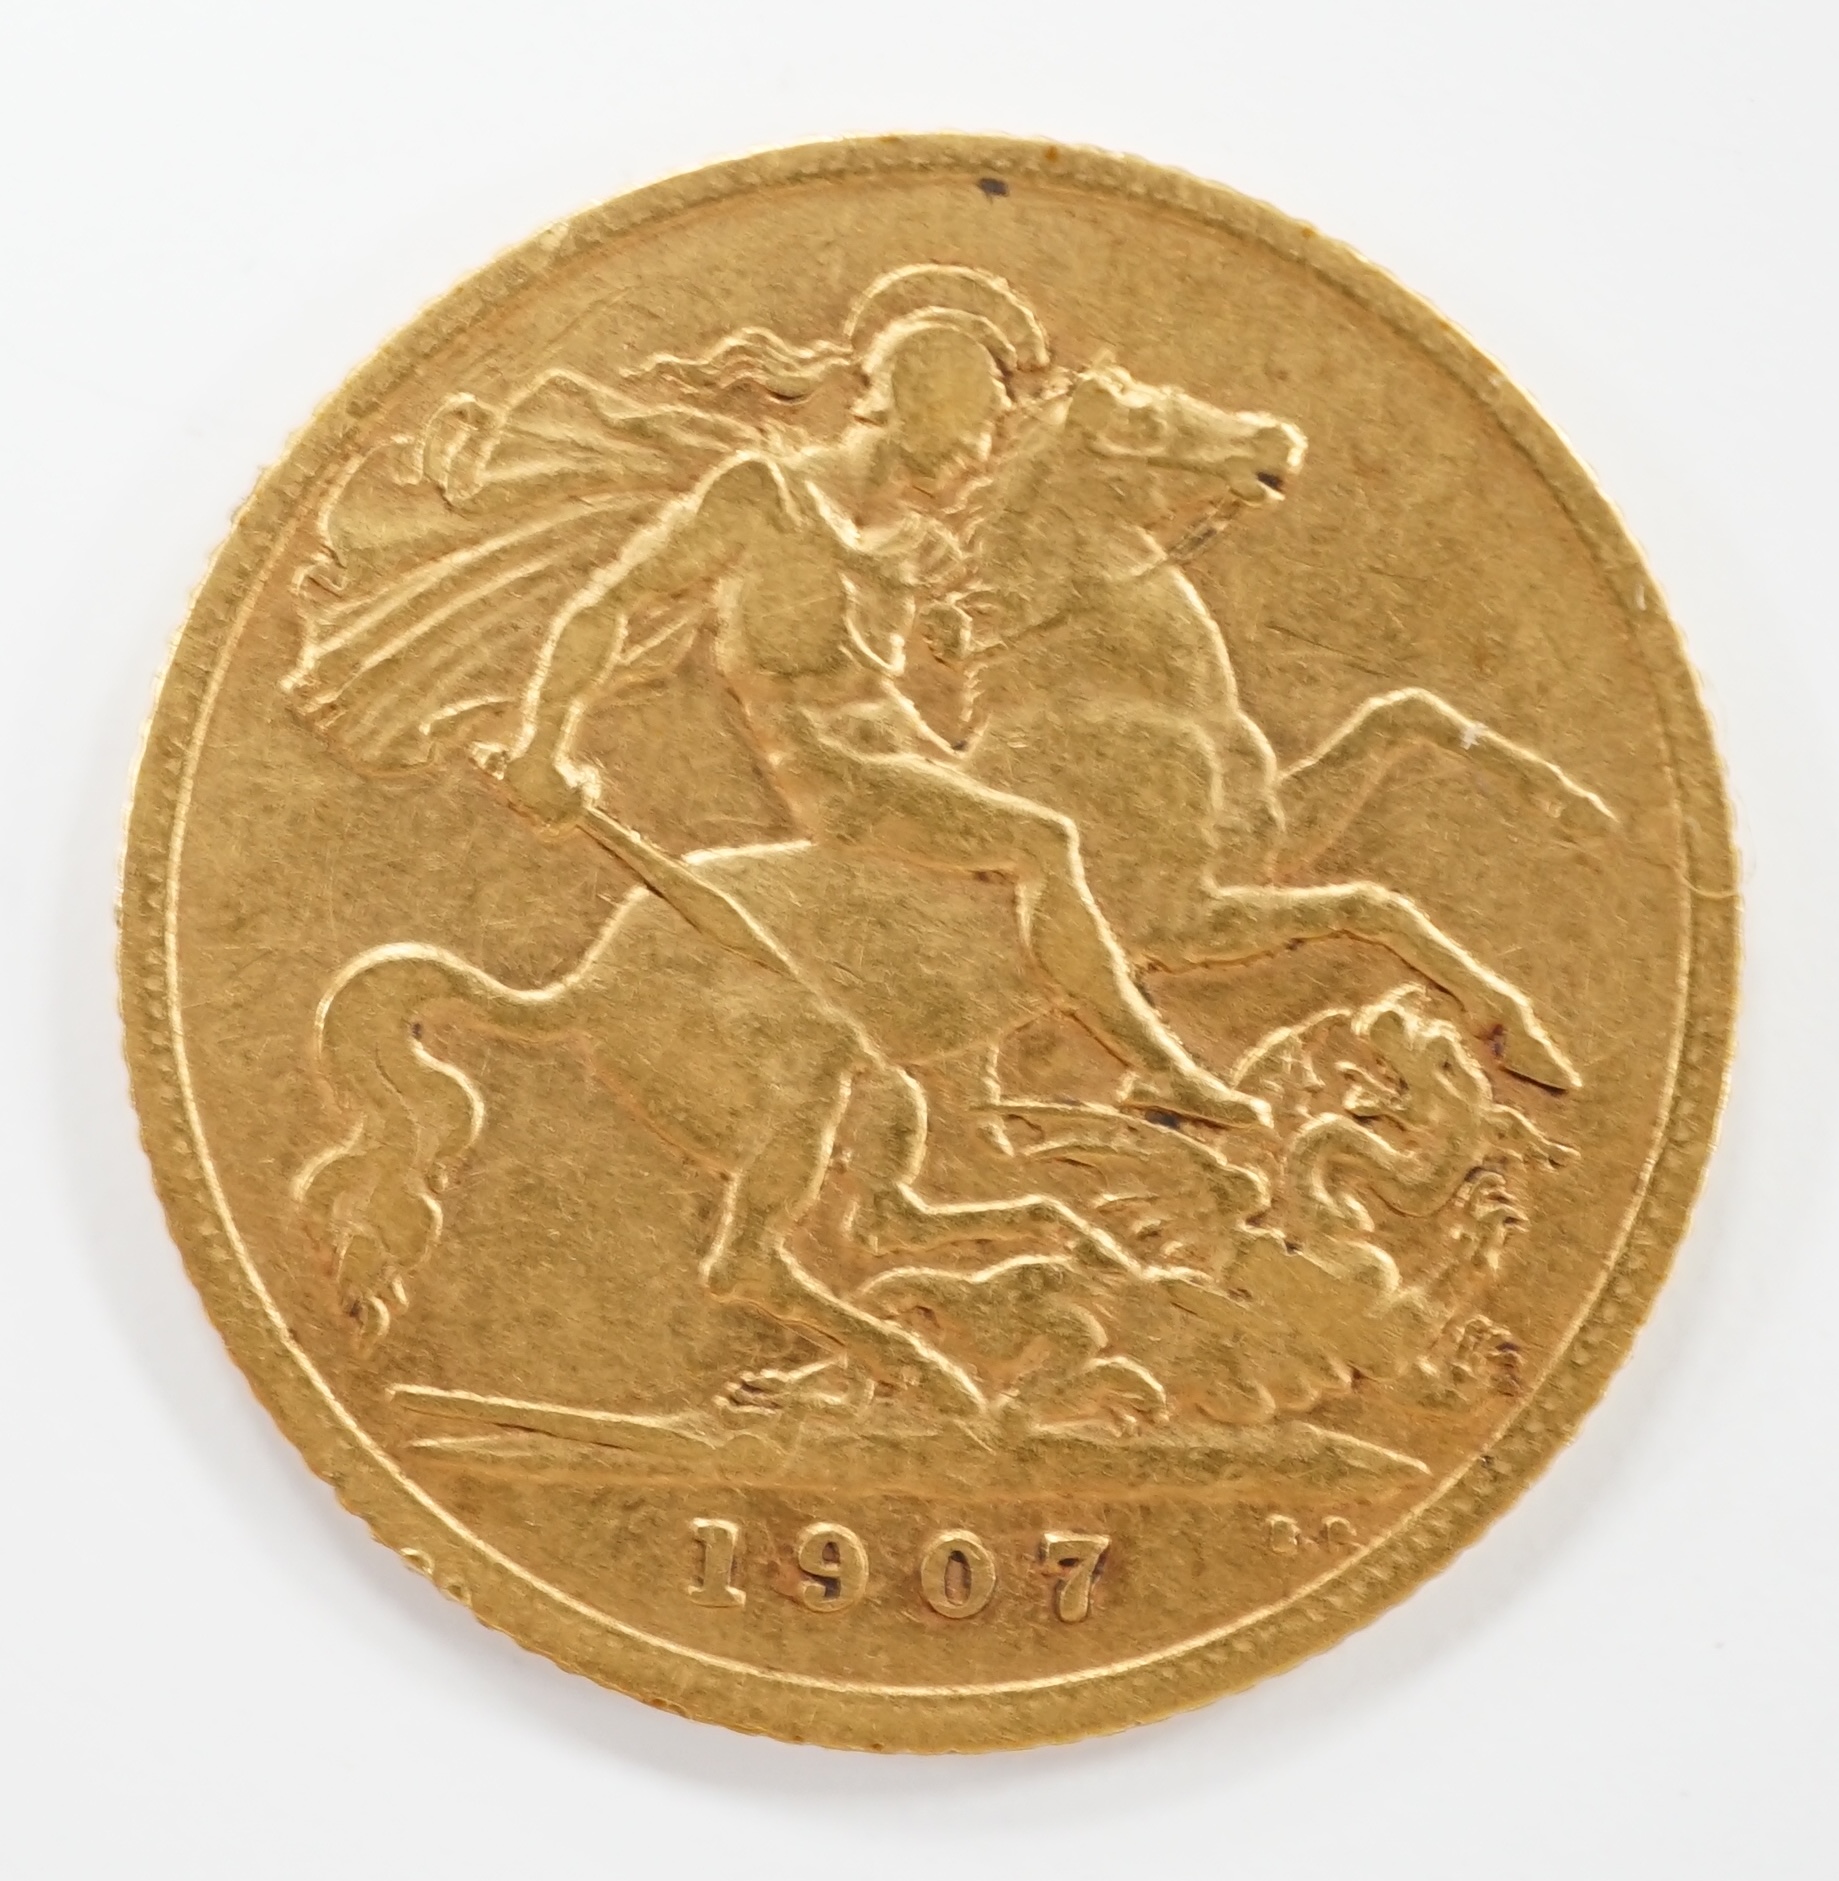 British gold coins, Edward VII, 1907 half sovereign.